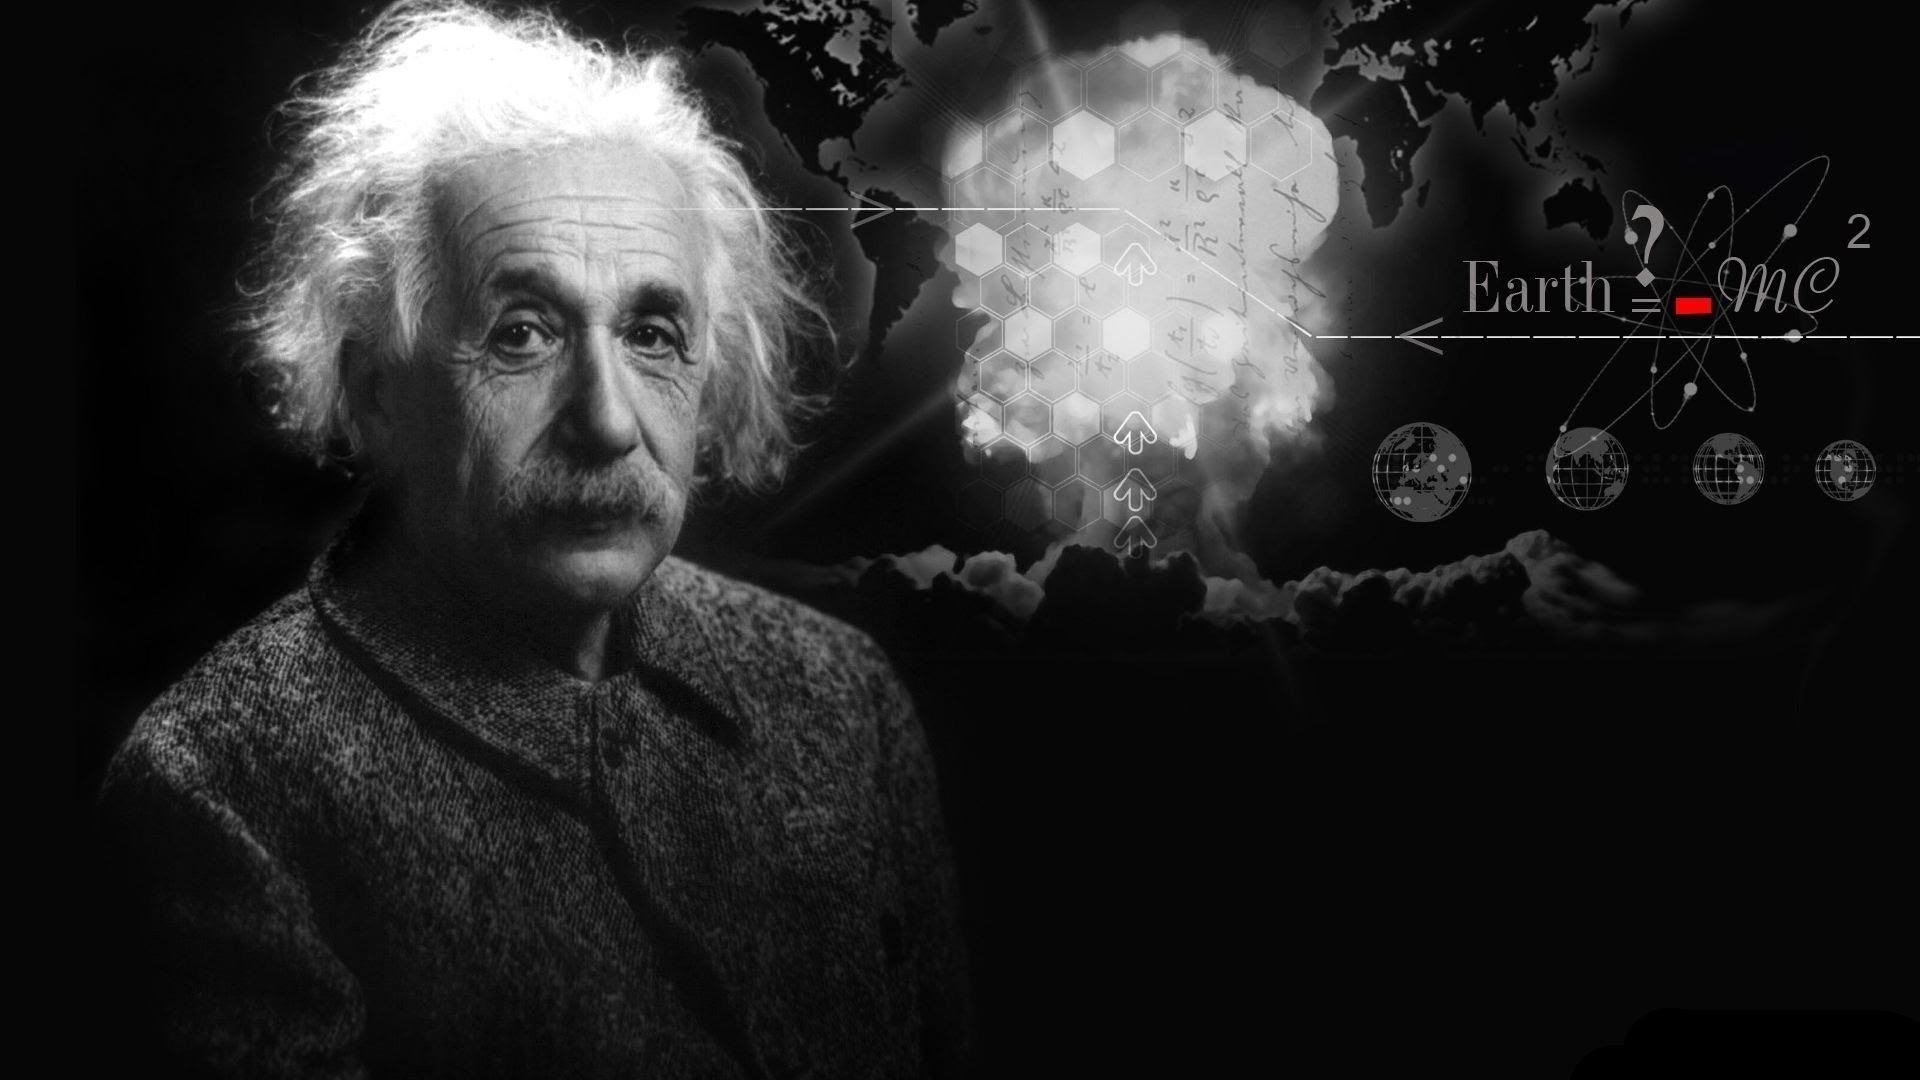 Cine a fost Albert Einstein